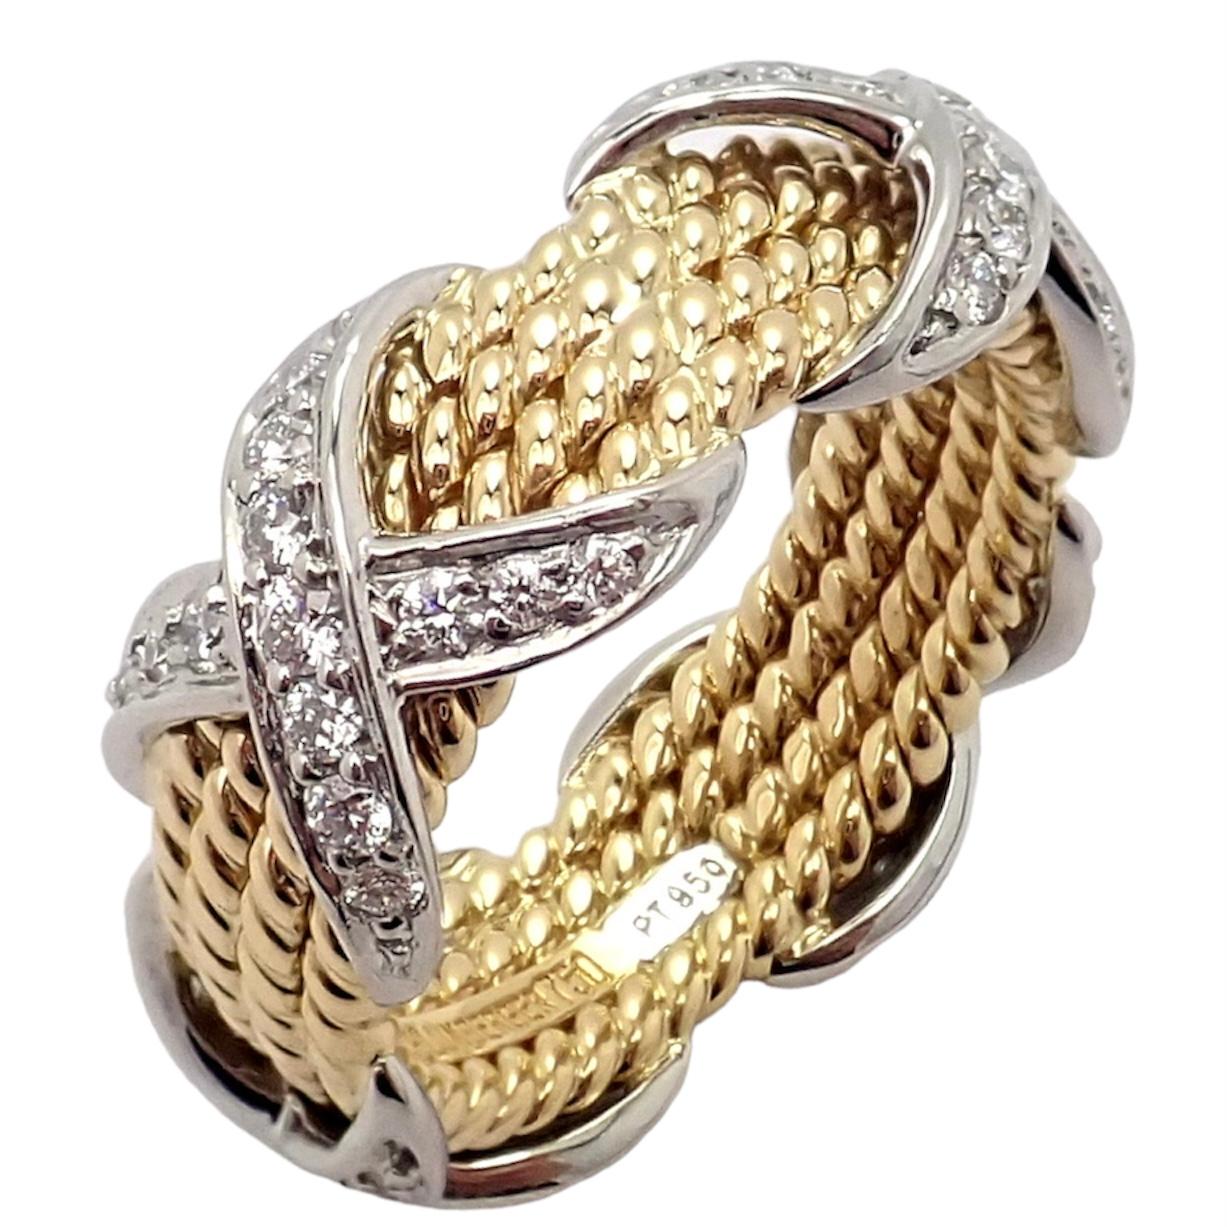 Bague à quatre rangs de diamants en or jaune 18k et platine par Tiffany & Co. Fait partie de la célèbre collection de Tiffany & S par Jean Schlumberger. 

Avec 52 diamants, pureté VS1, couleur G. Poids total des diamants : 1,25 ct.

Détails :